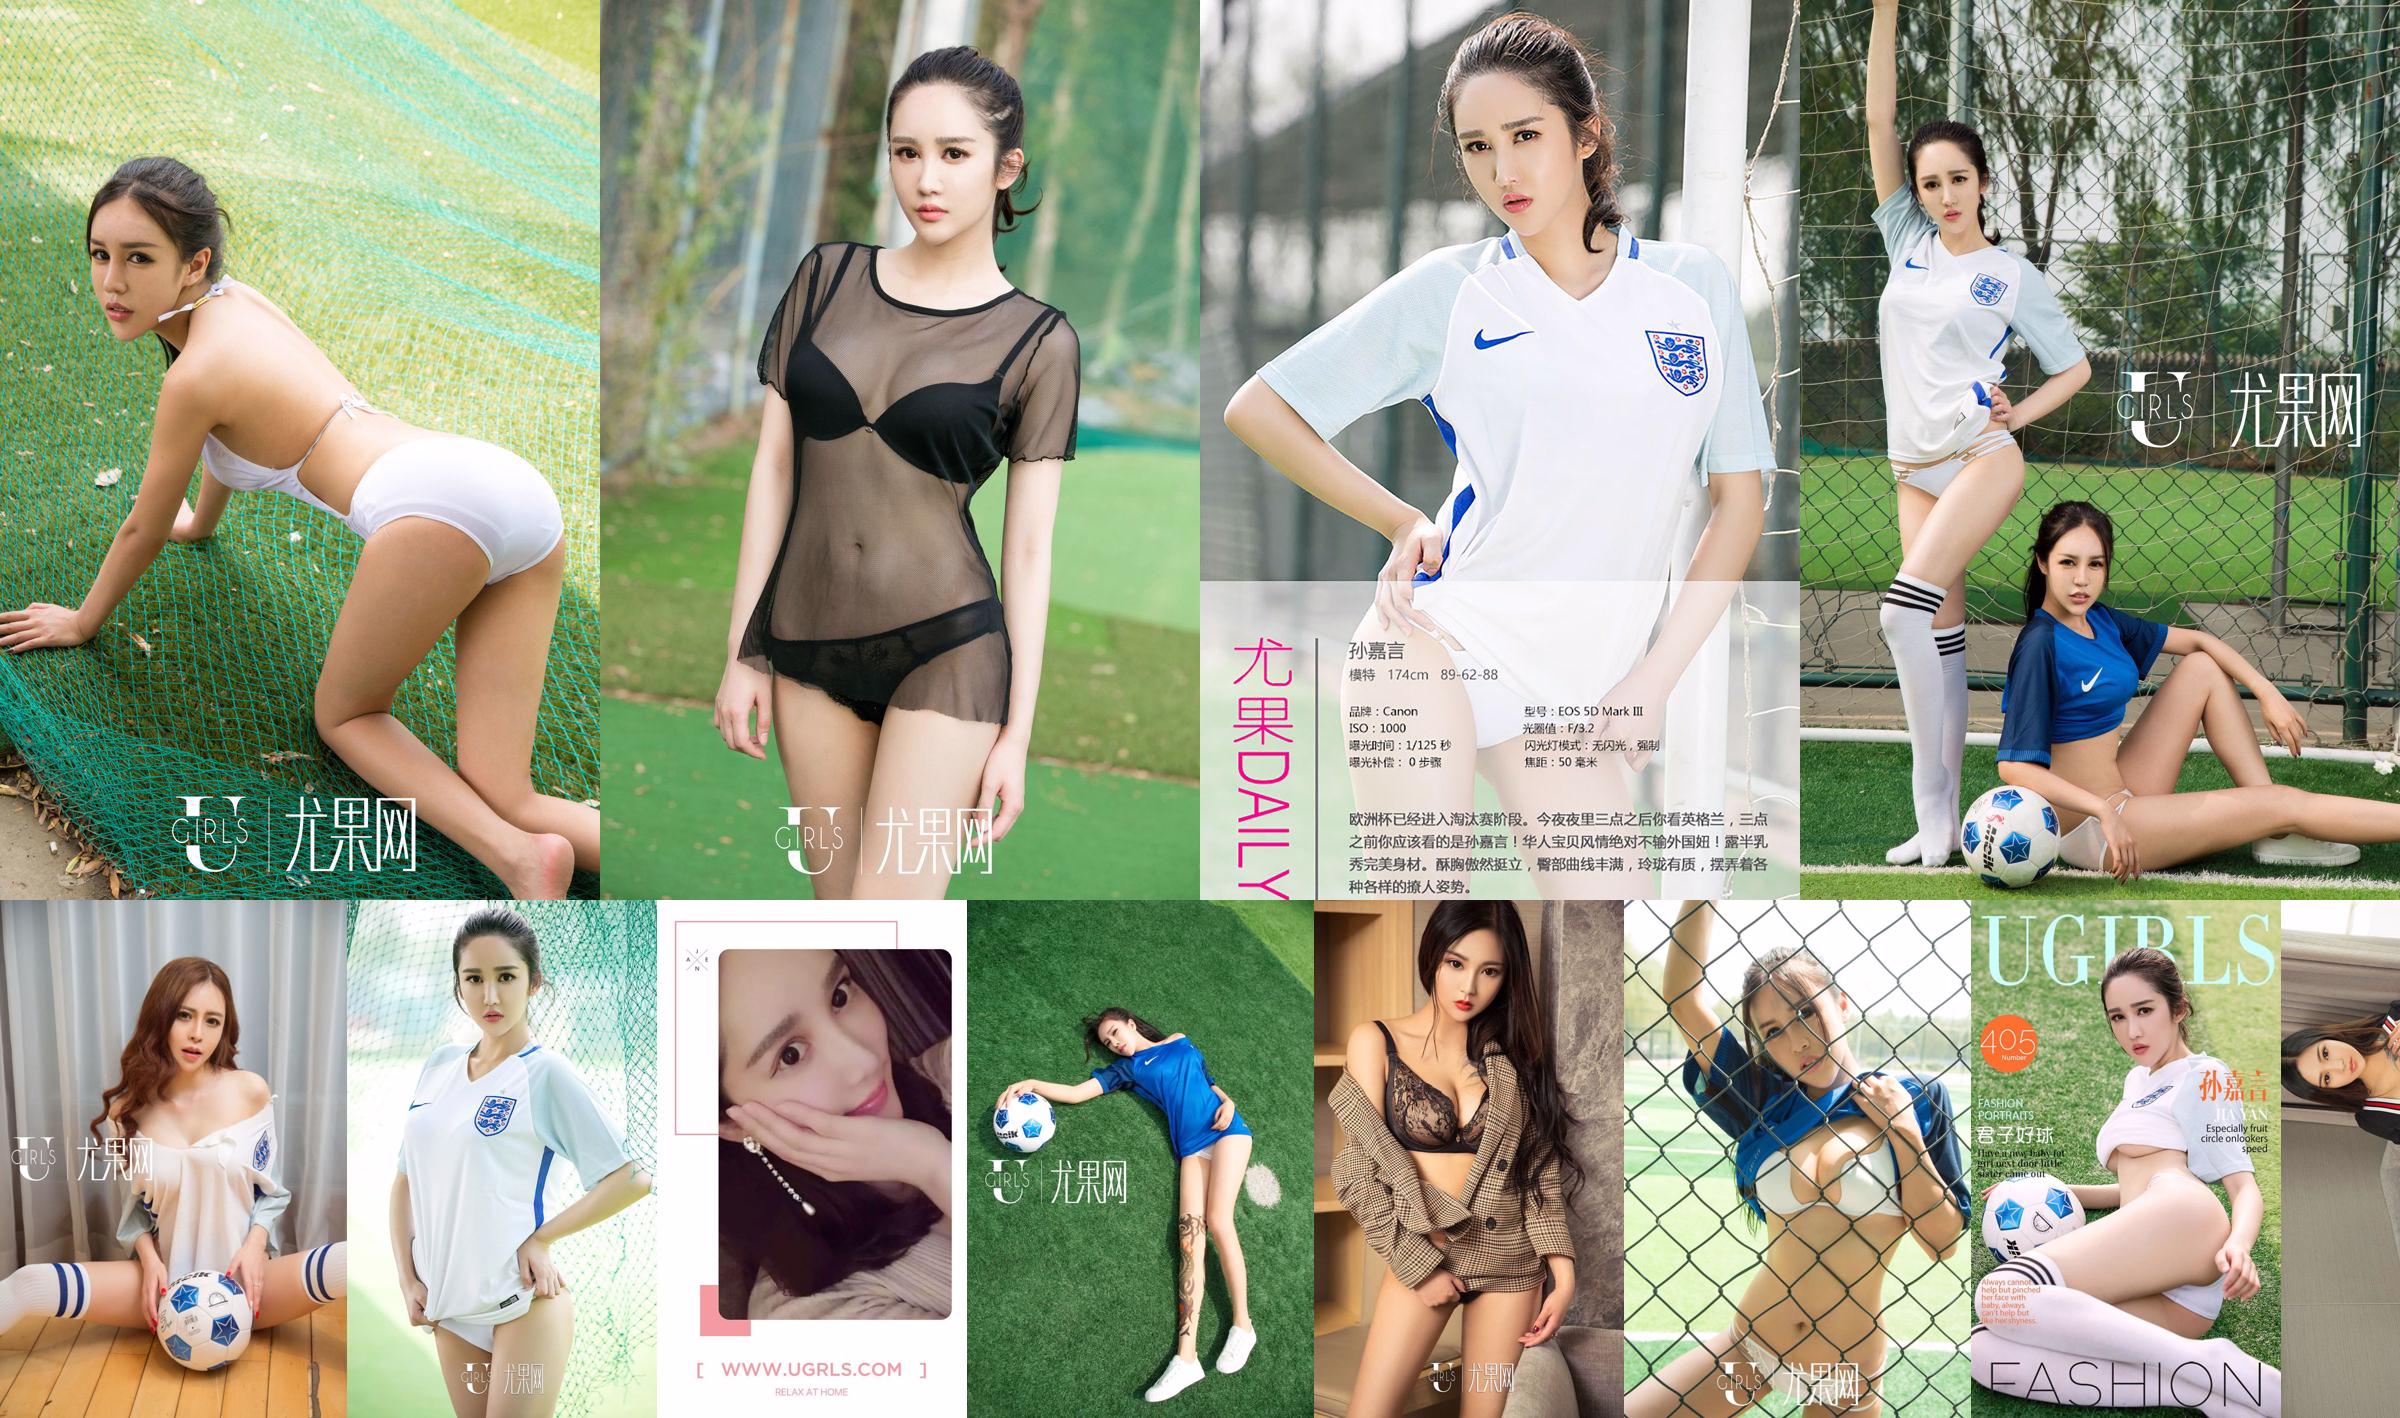 Sun Jiayan / Little Wisteria / Jin Xin / Li Yaying / Chun Jiao "Football Baby" [Ugirls] T019 No.7d1fbc Pagina 1